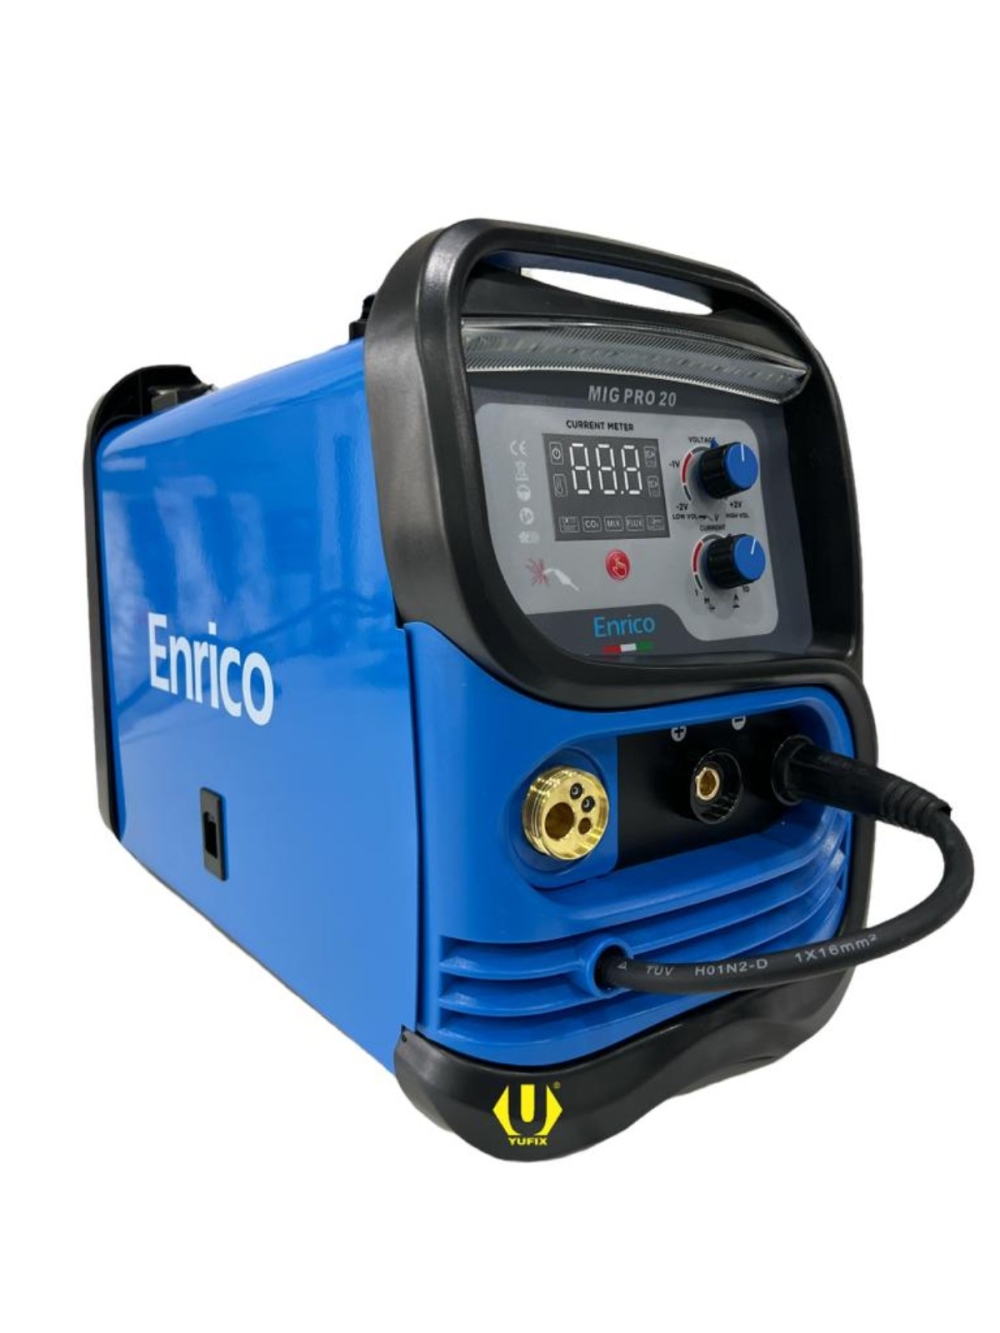 ENRICO MIG PRO 20 3 IN1 MIG/MAG/MMA/TIG IGBT WELDING MACHINE C/W STD.ACC (GAS OR GASLESS)